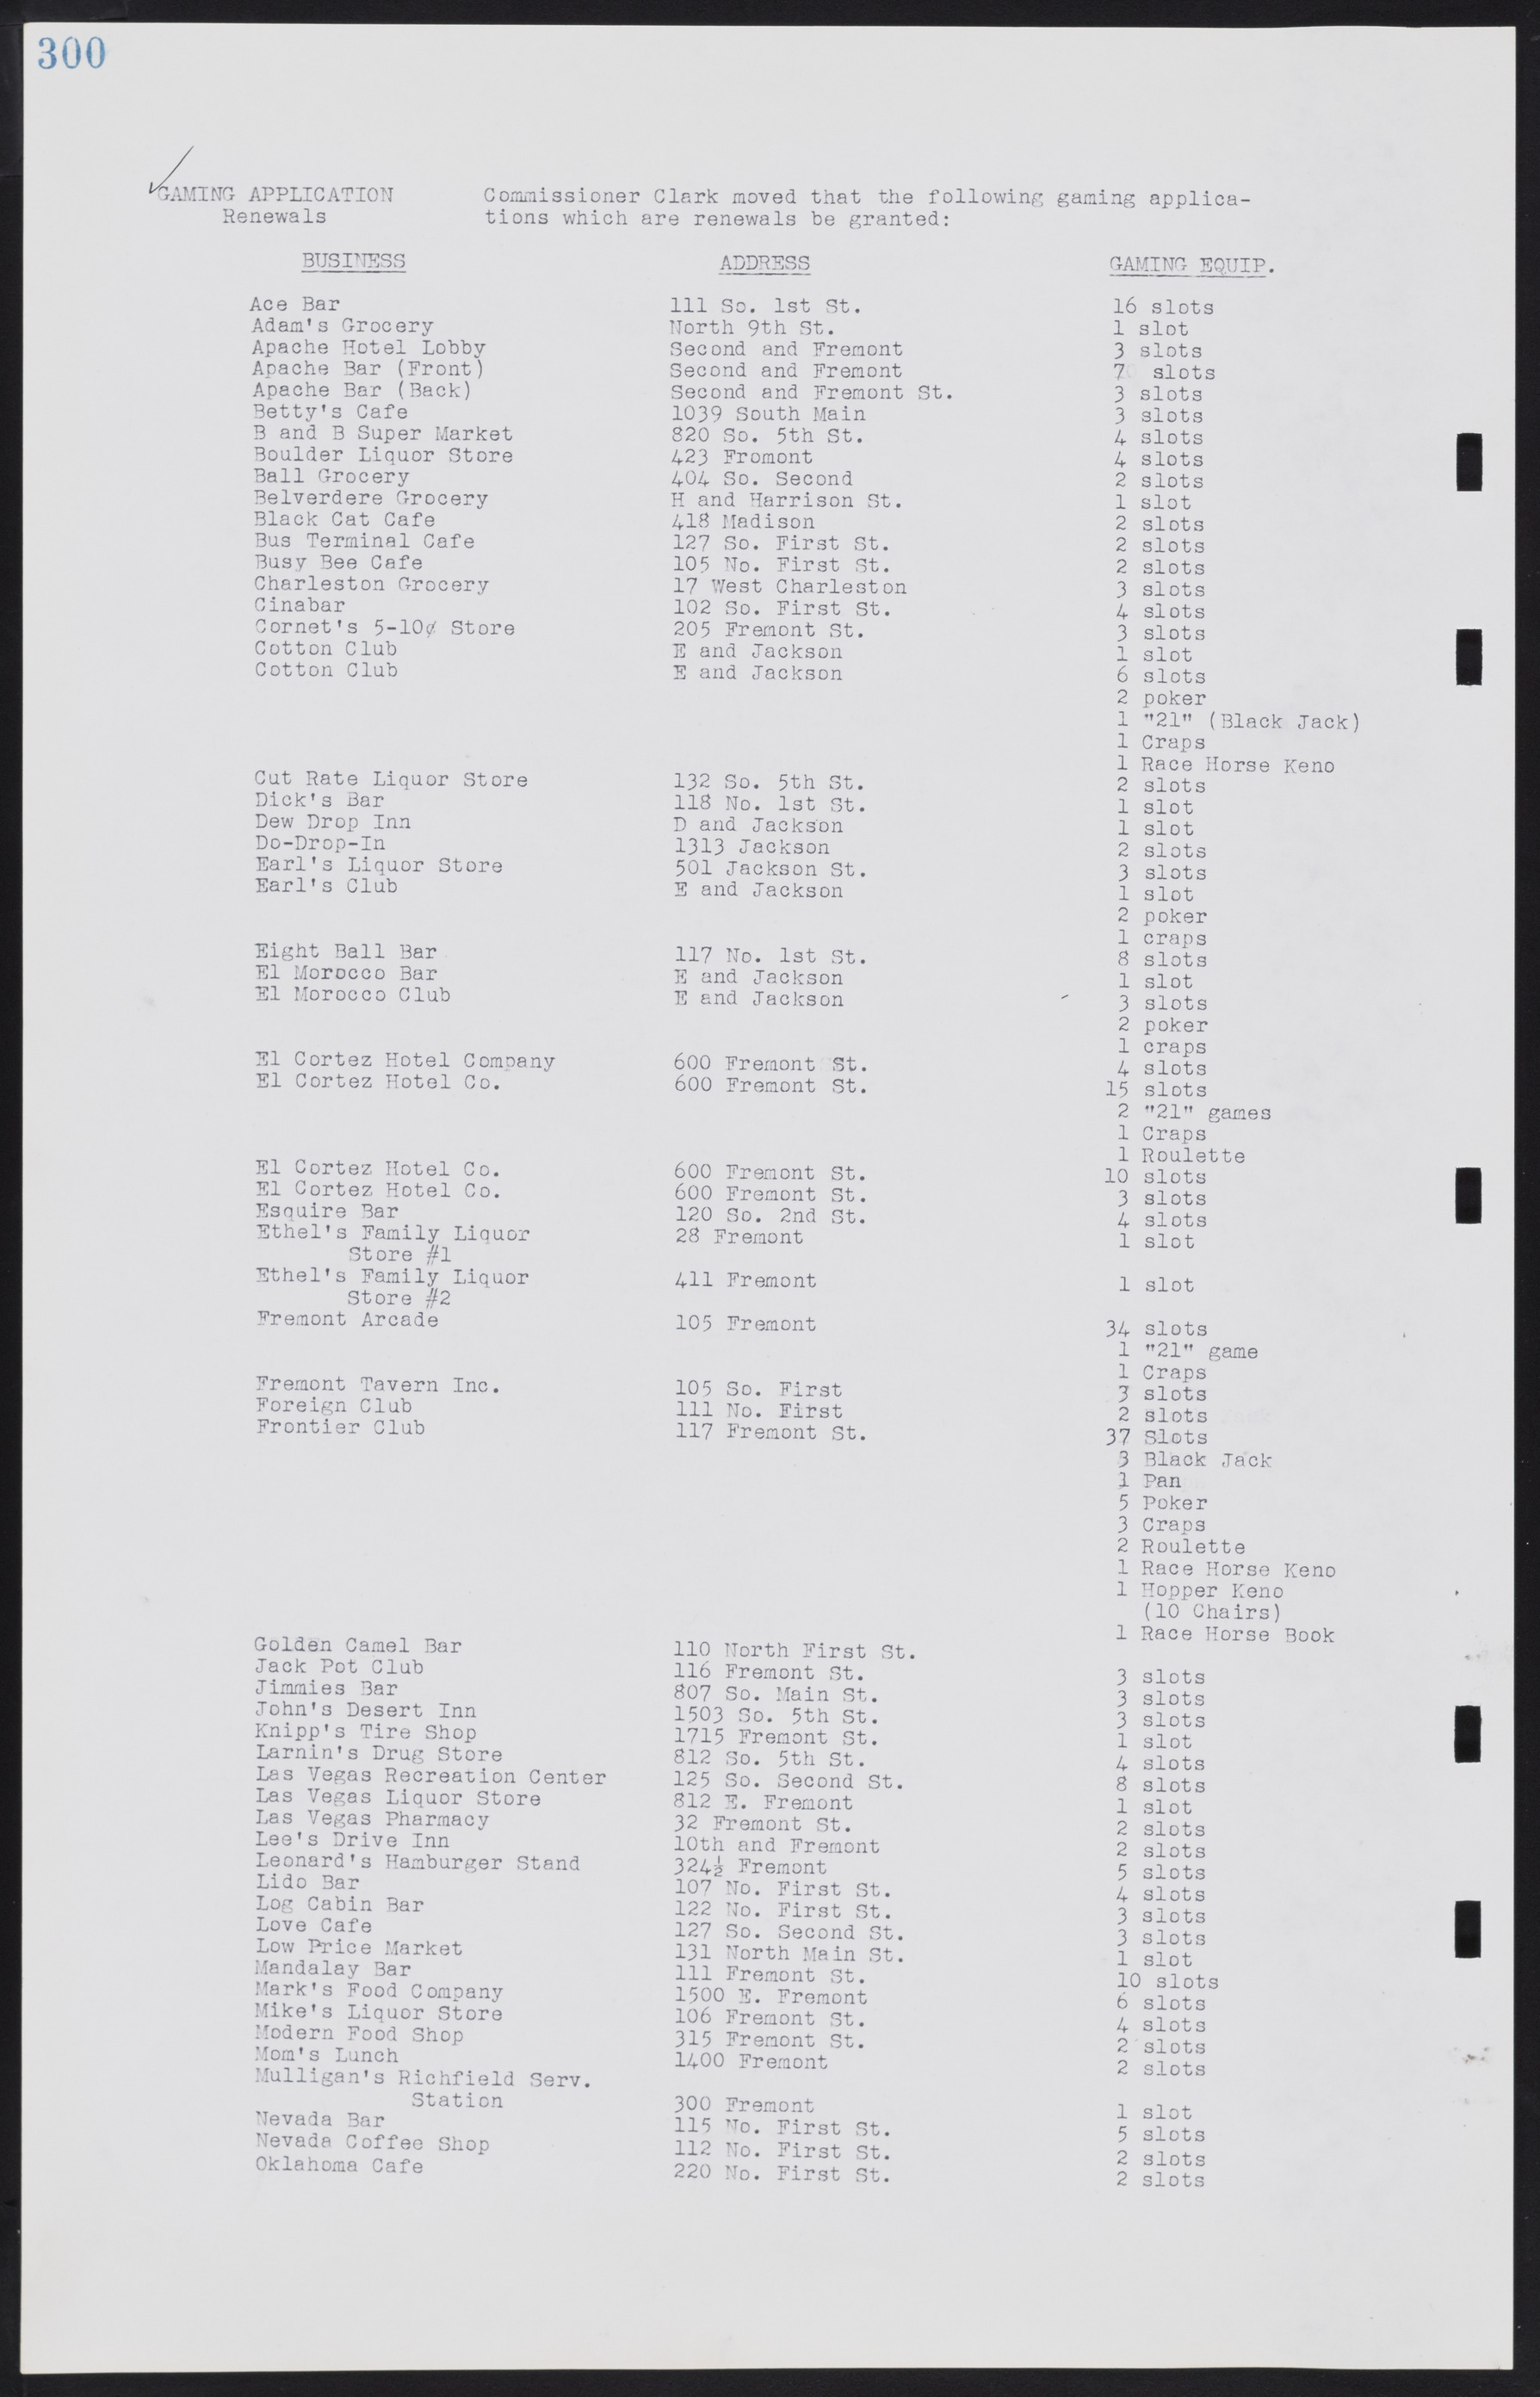 Las Vegas City Commission Minutes, August 11, 1942 to December 30, 1946, lvc000005-322